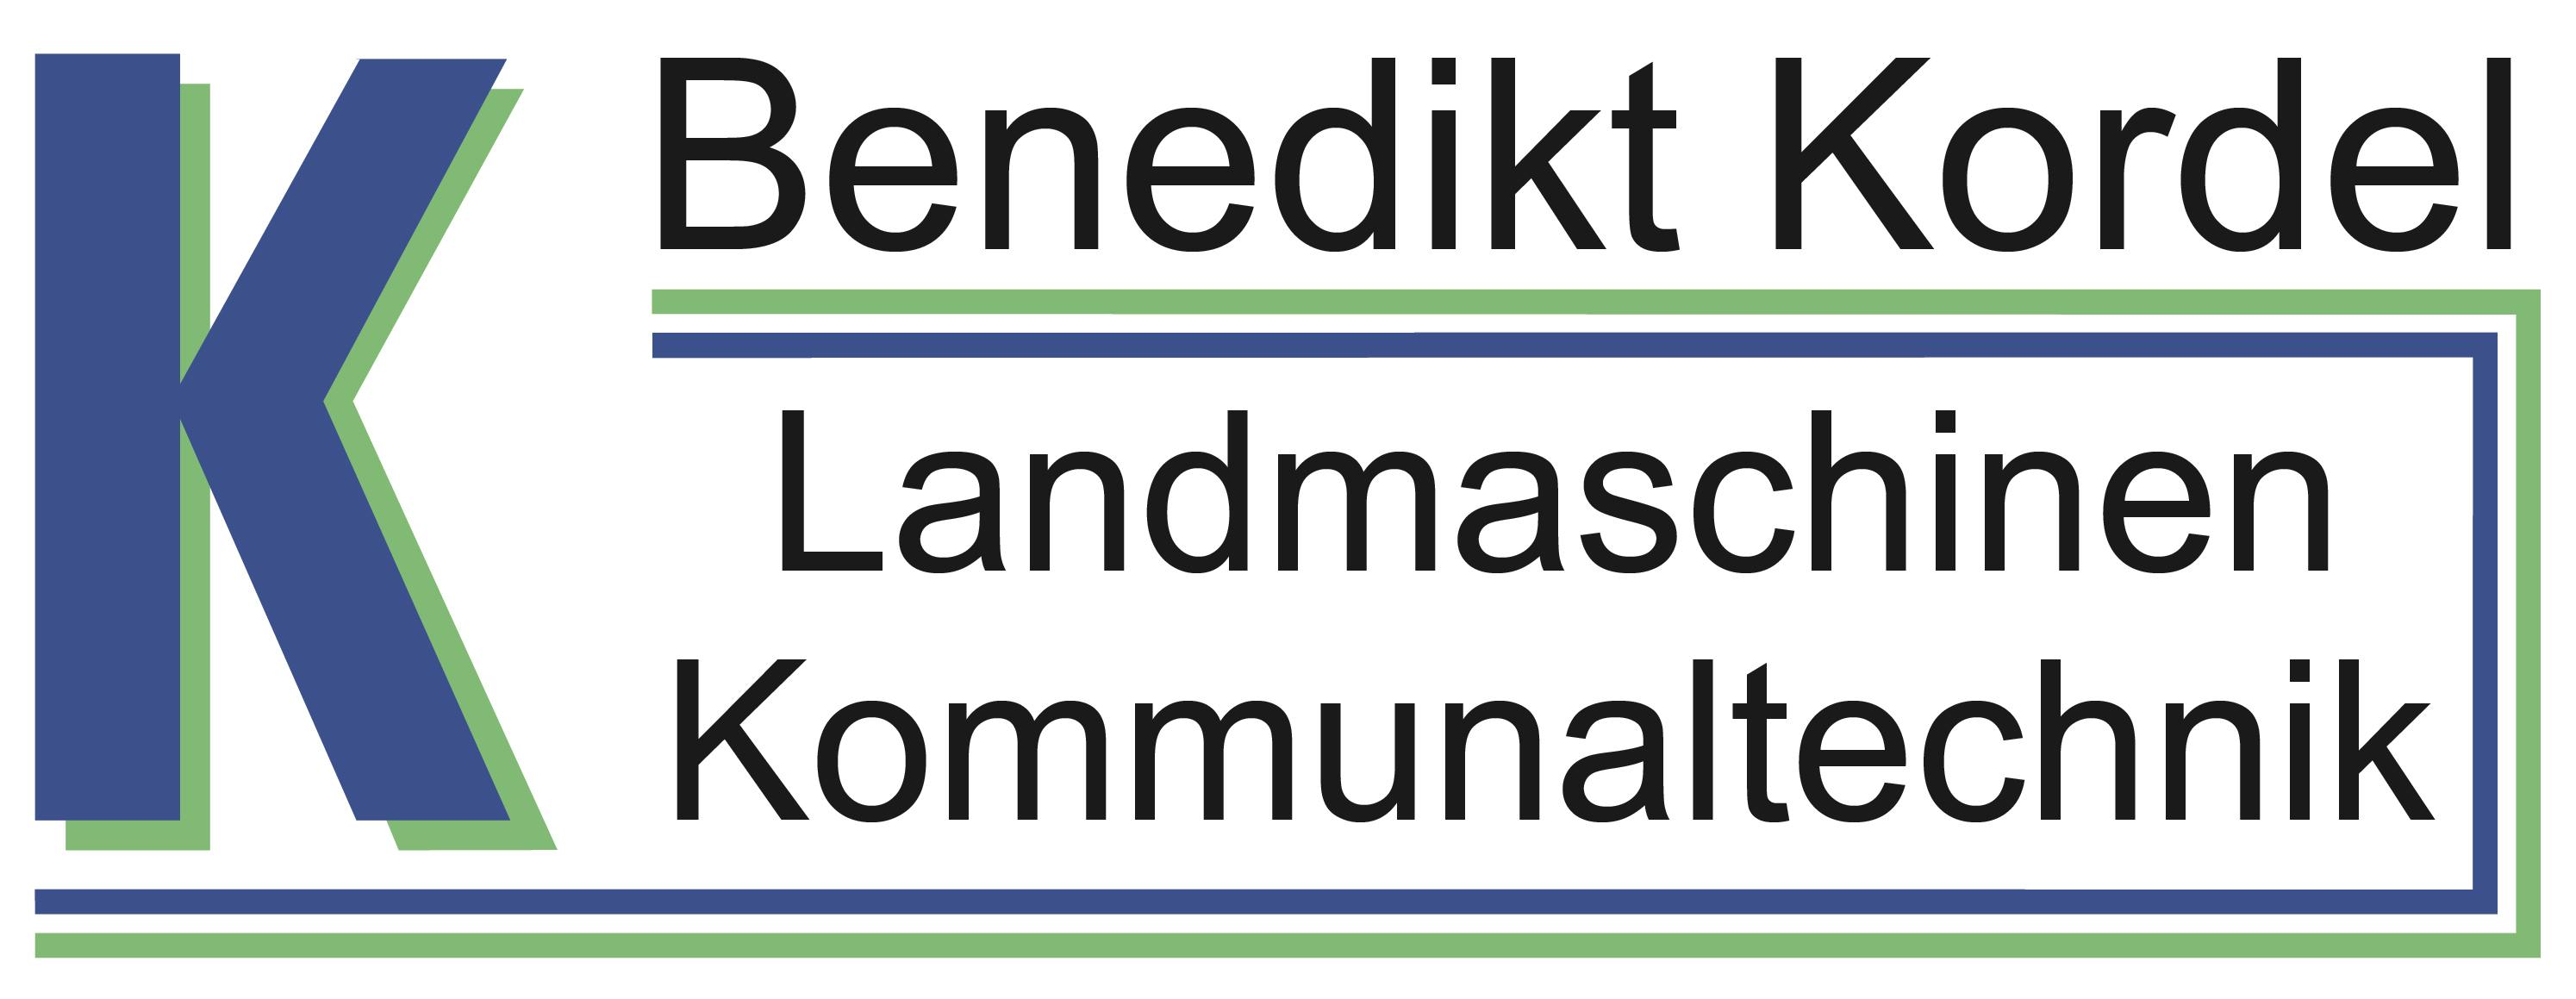 Company logo for 'Benedikt Kordel GmbH & Co. KG'.